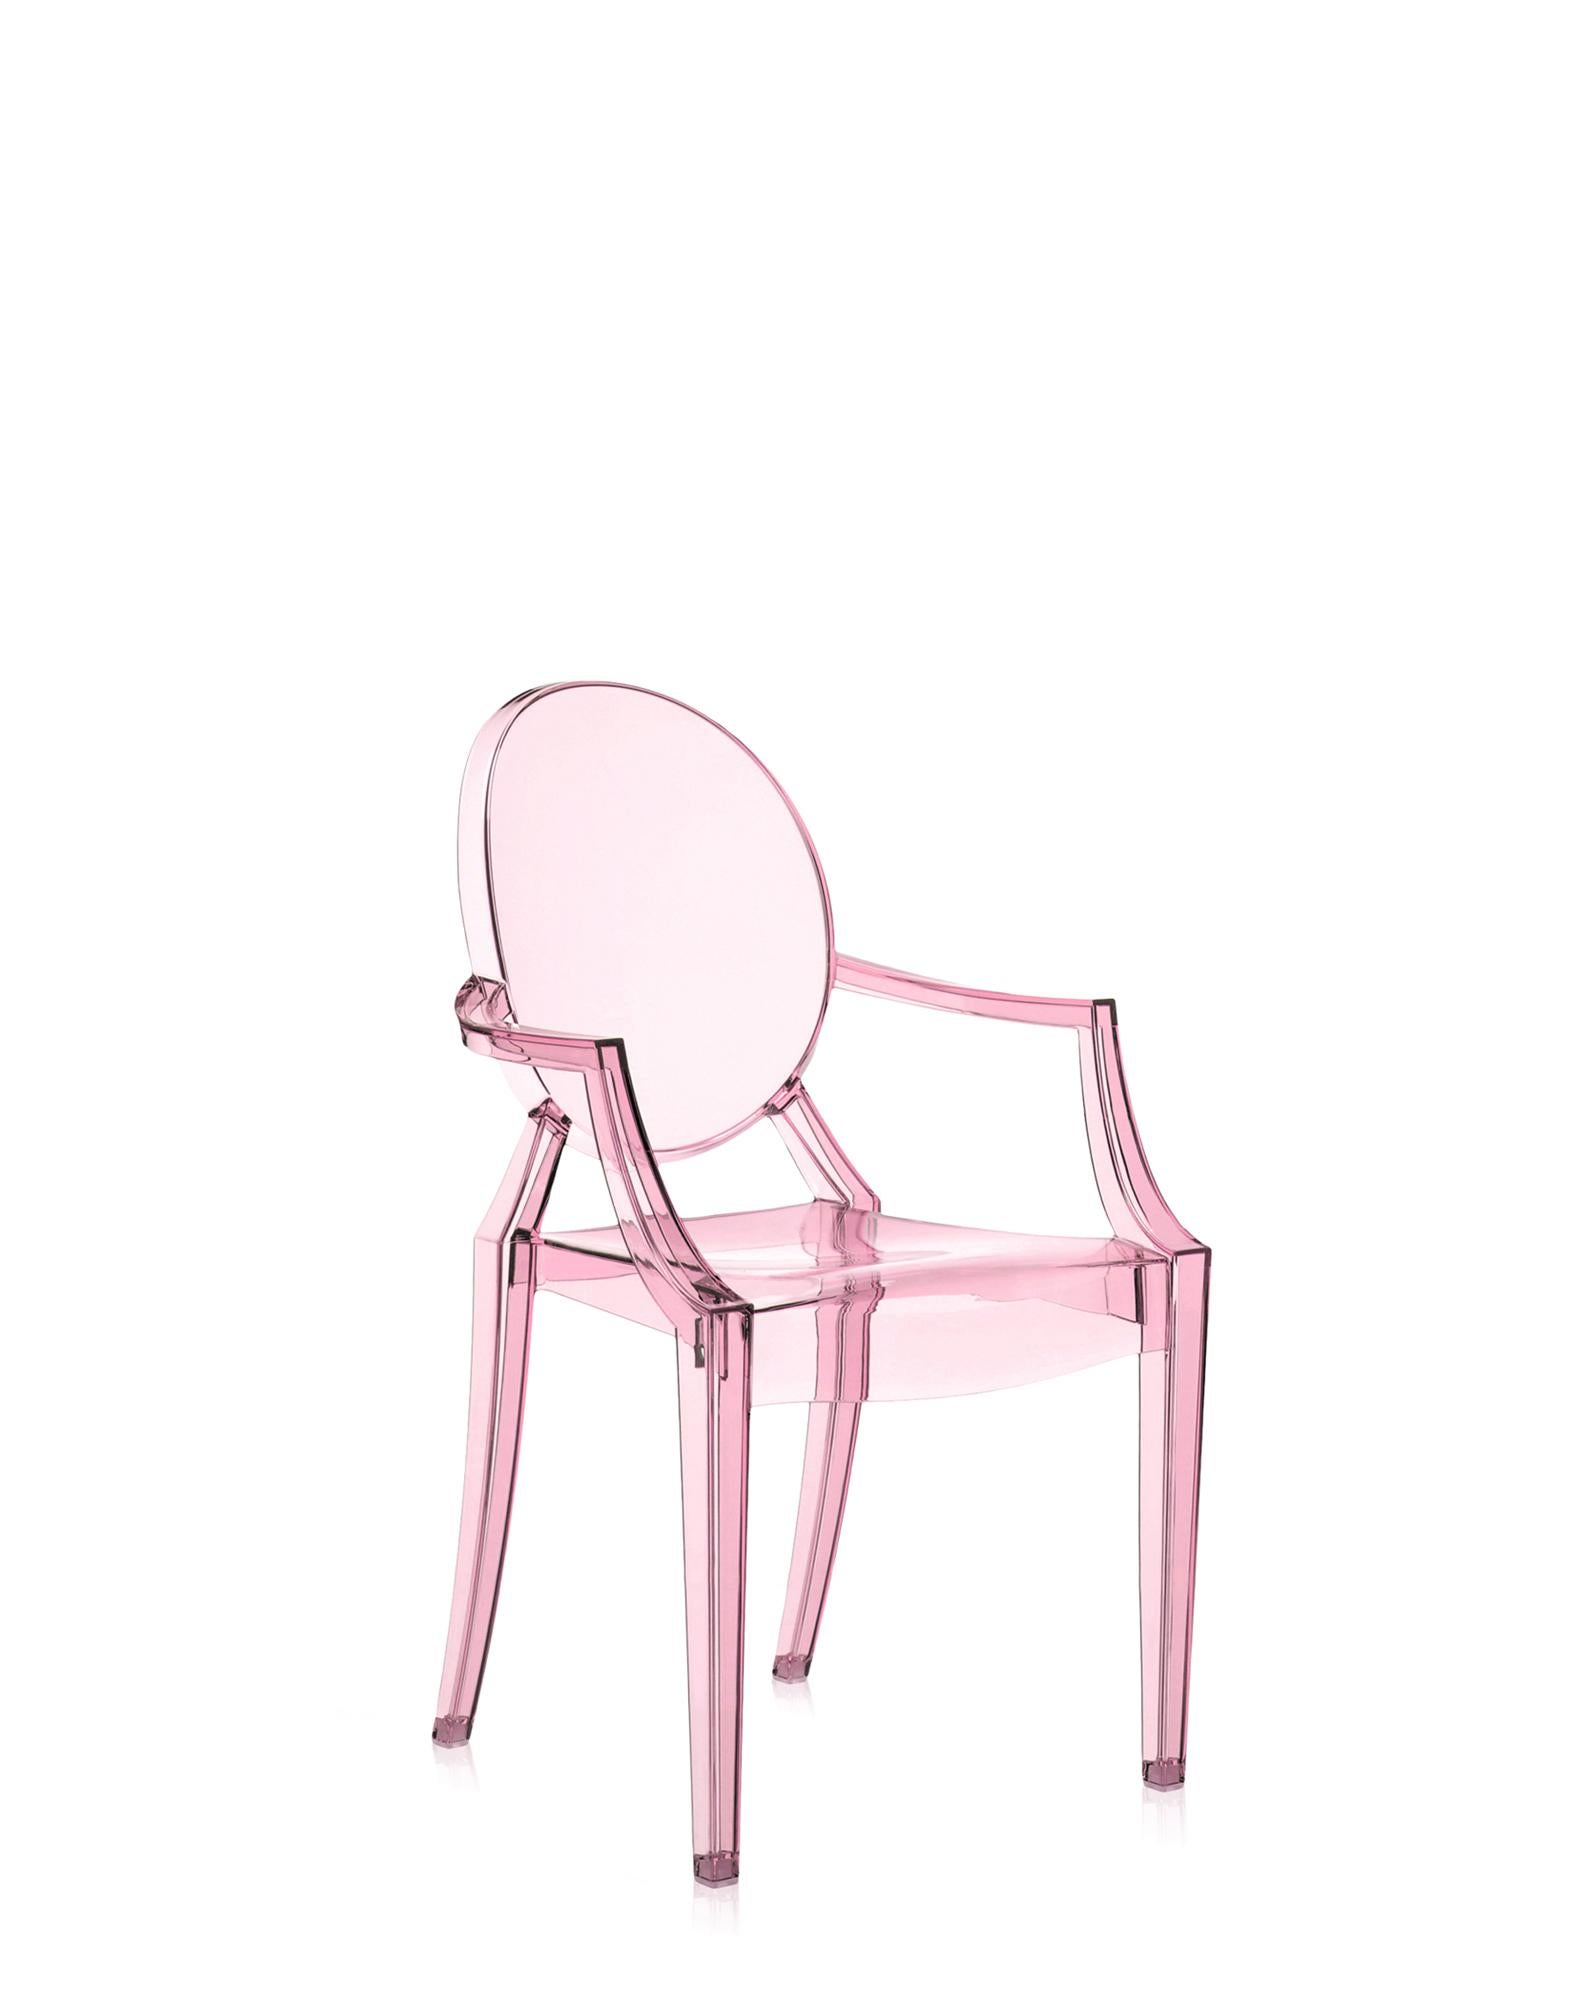 La version miniature de l'une des chaises design les plus célèbres rejoint la ligne Kartell Kids dans plusieurs nouvelles versions. Le Lou Lou Ghost de Philippe Starck reçoit de nouveaux graphismes personnalisables pour le monde amusant des